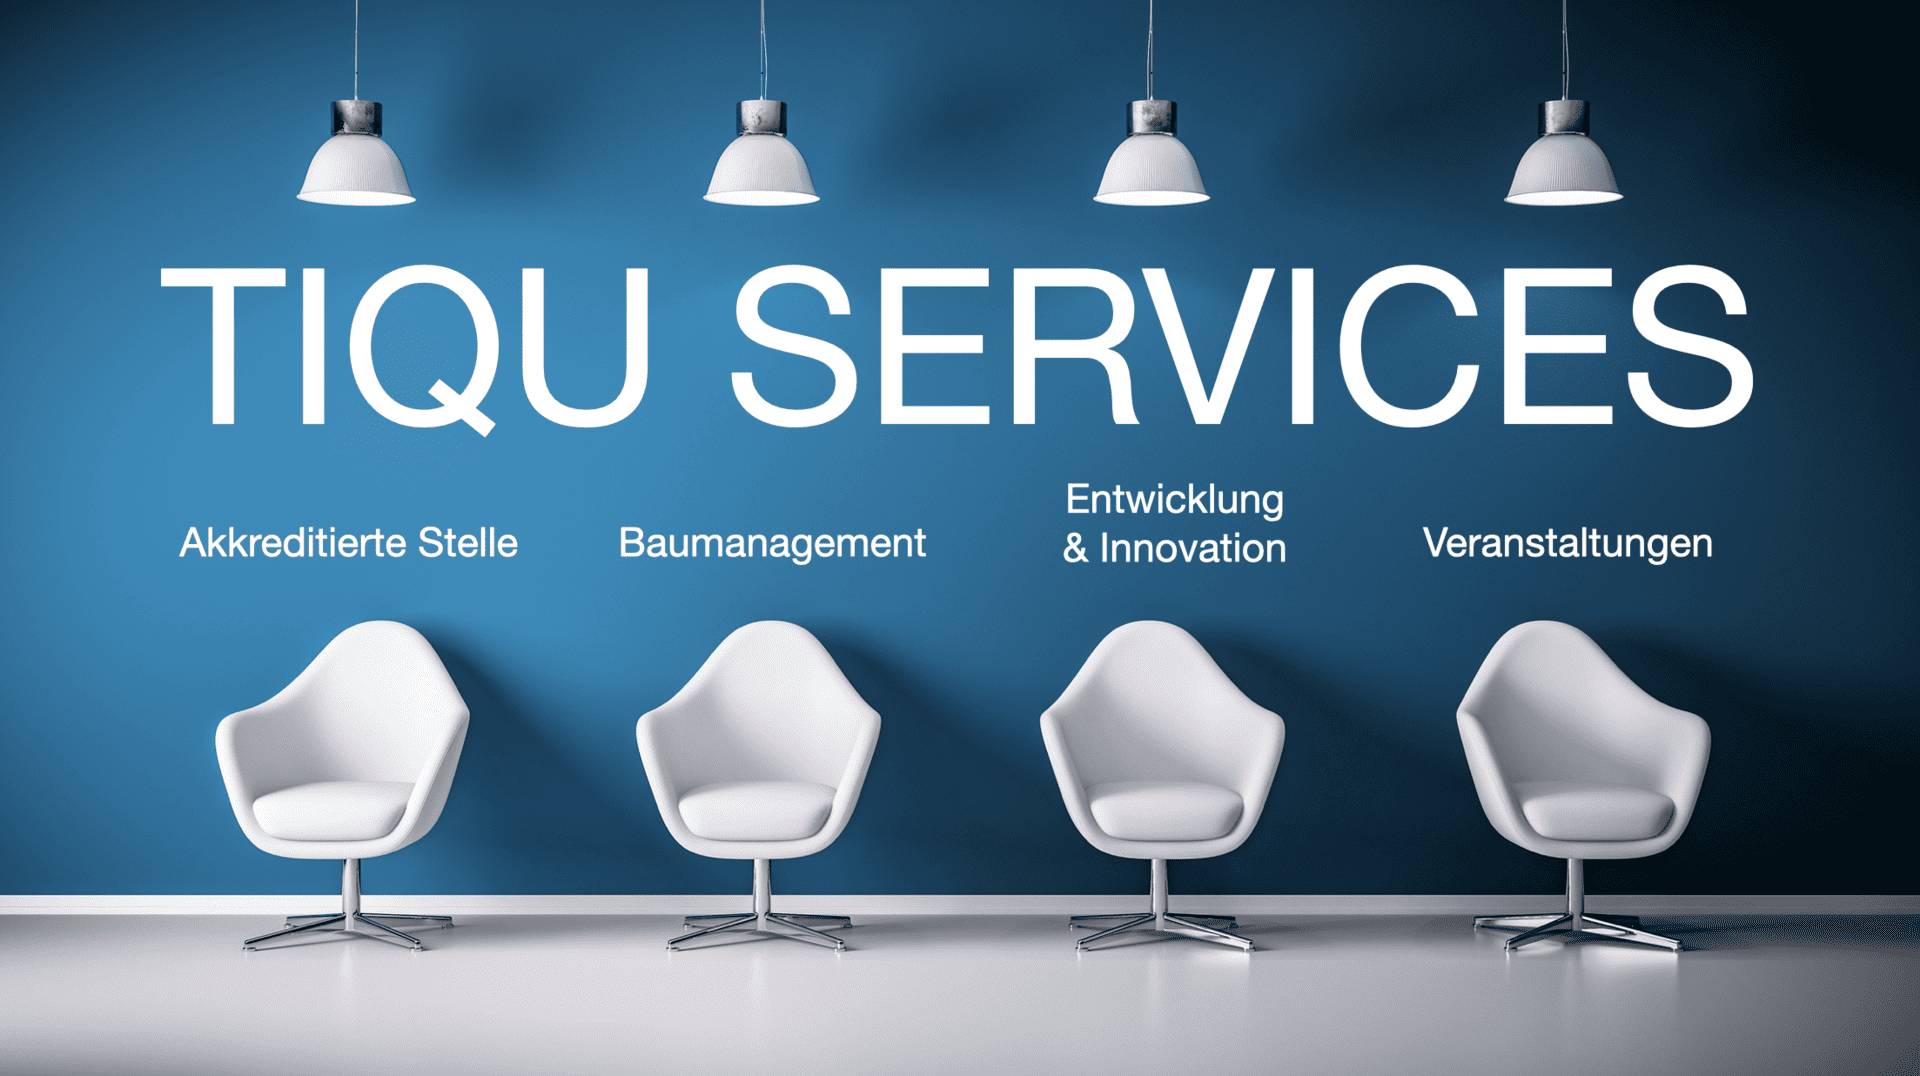 TIQU Services